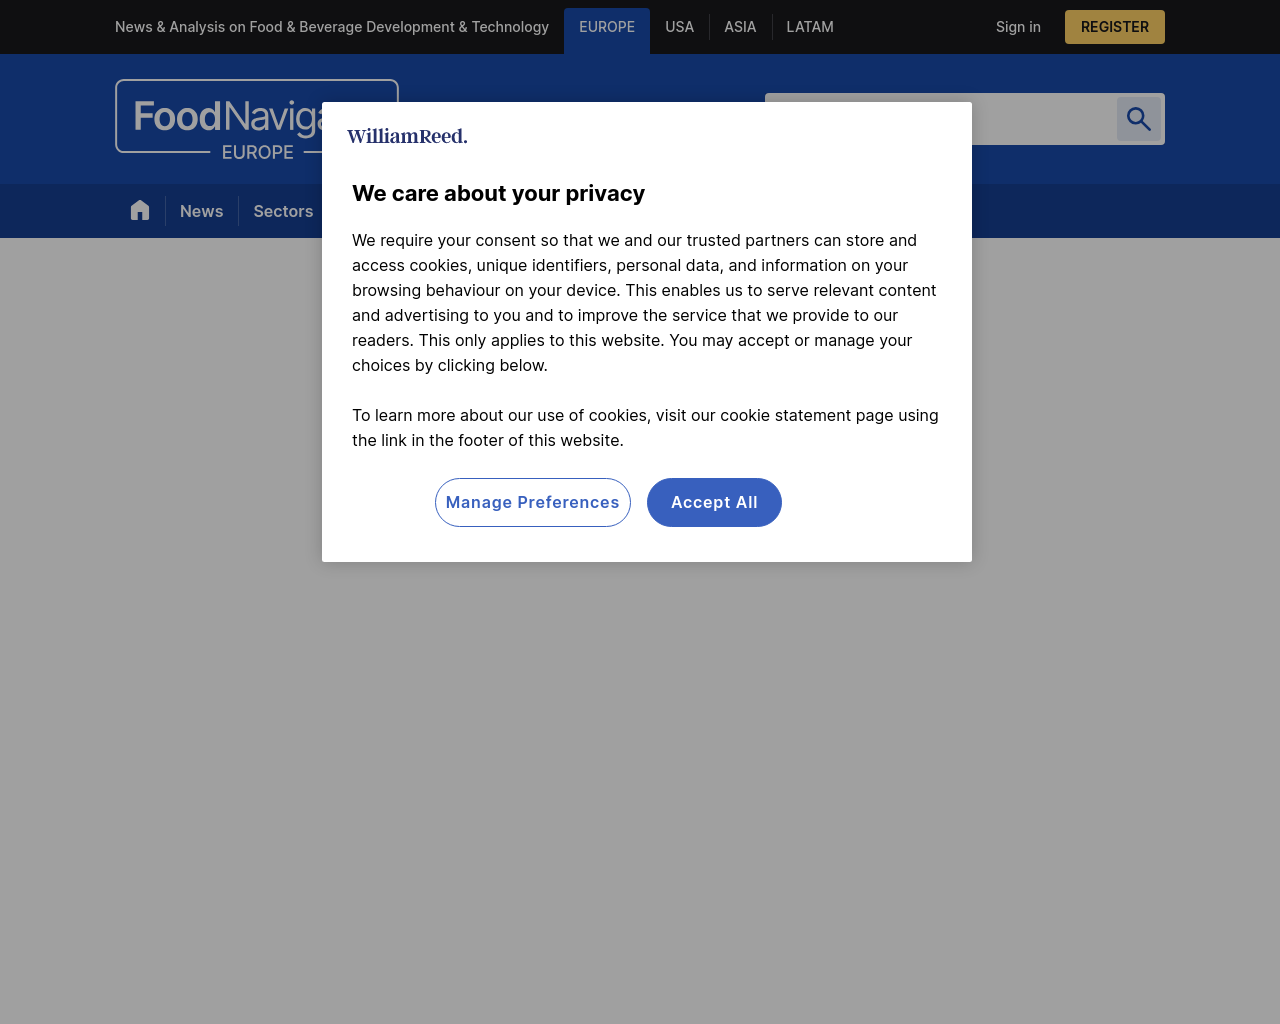 foodnavigator.com